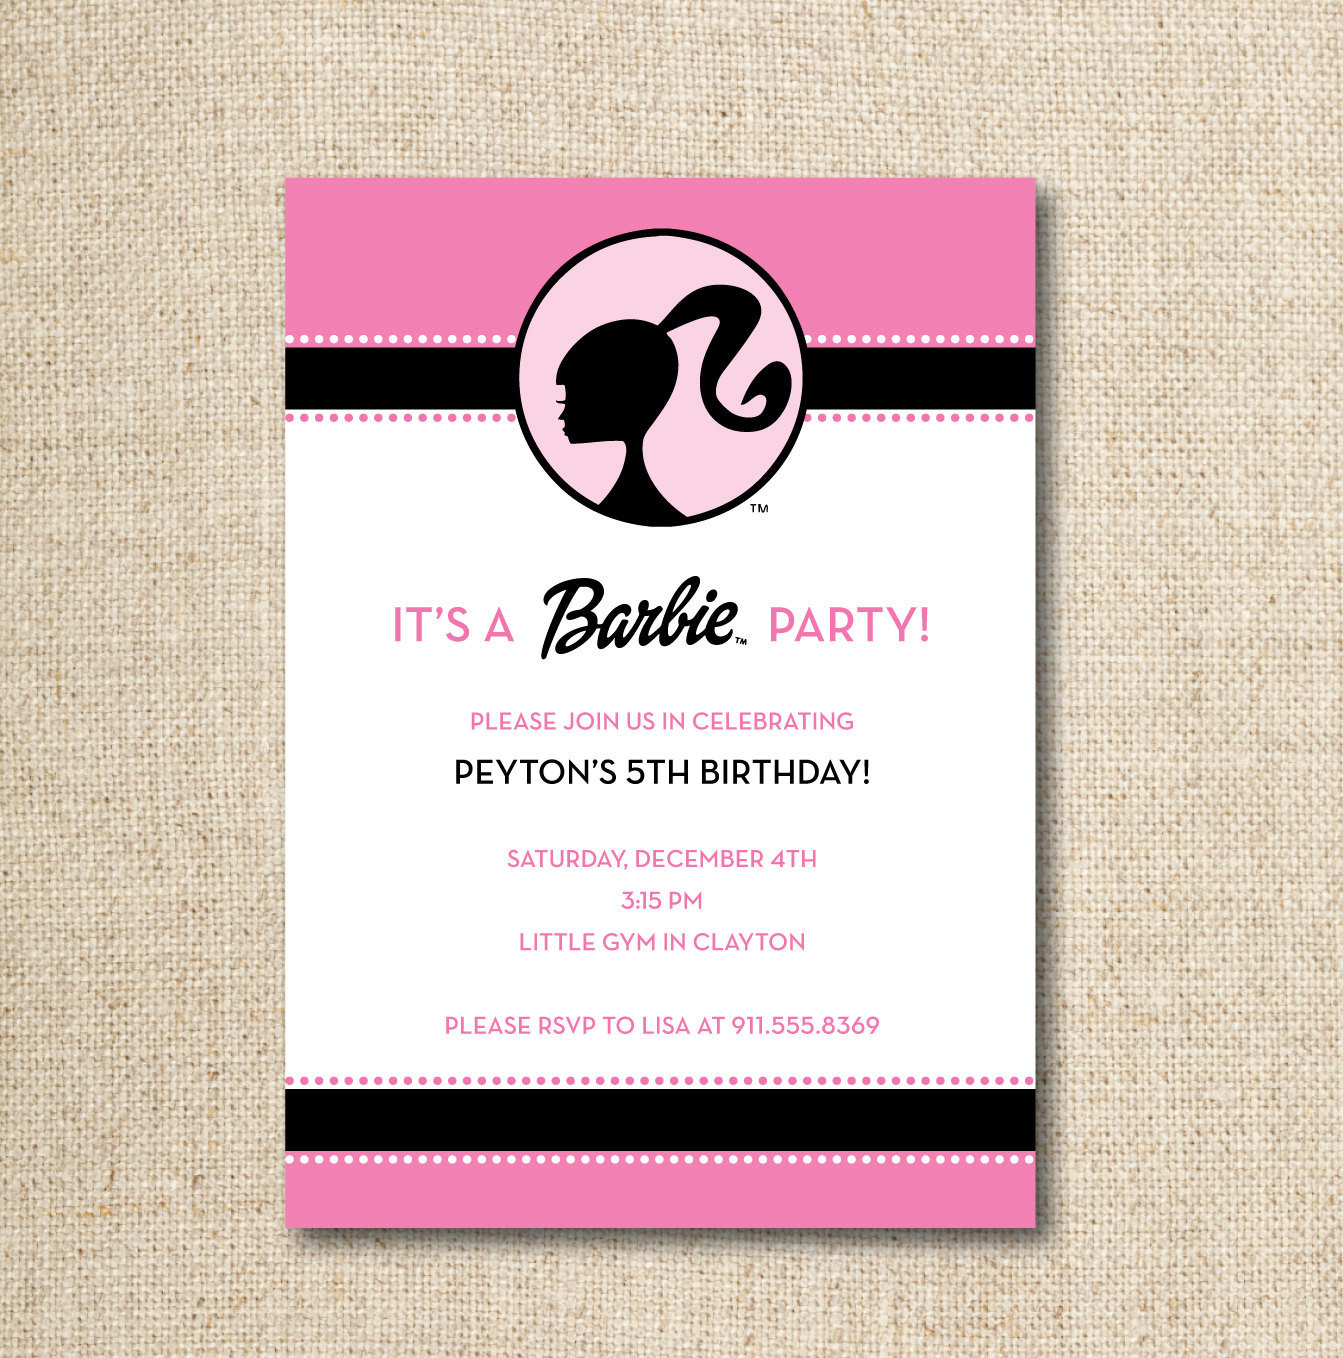 Barbie Birthday Invitations
 Unavailable Listing on Etsy